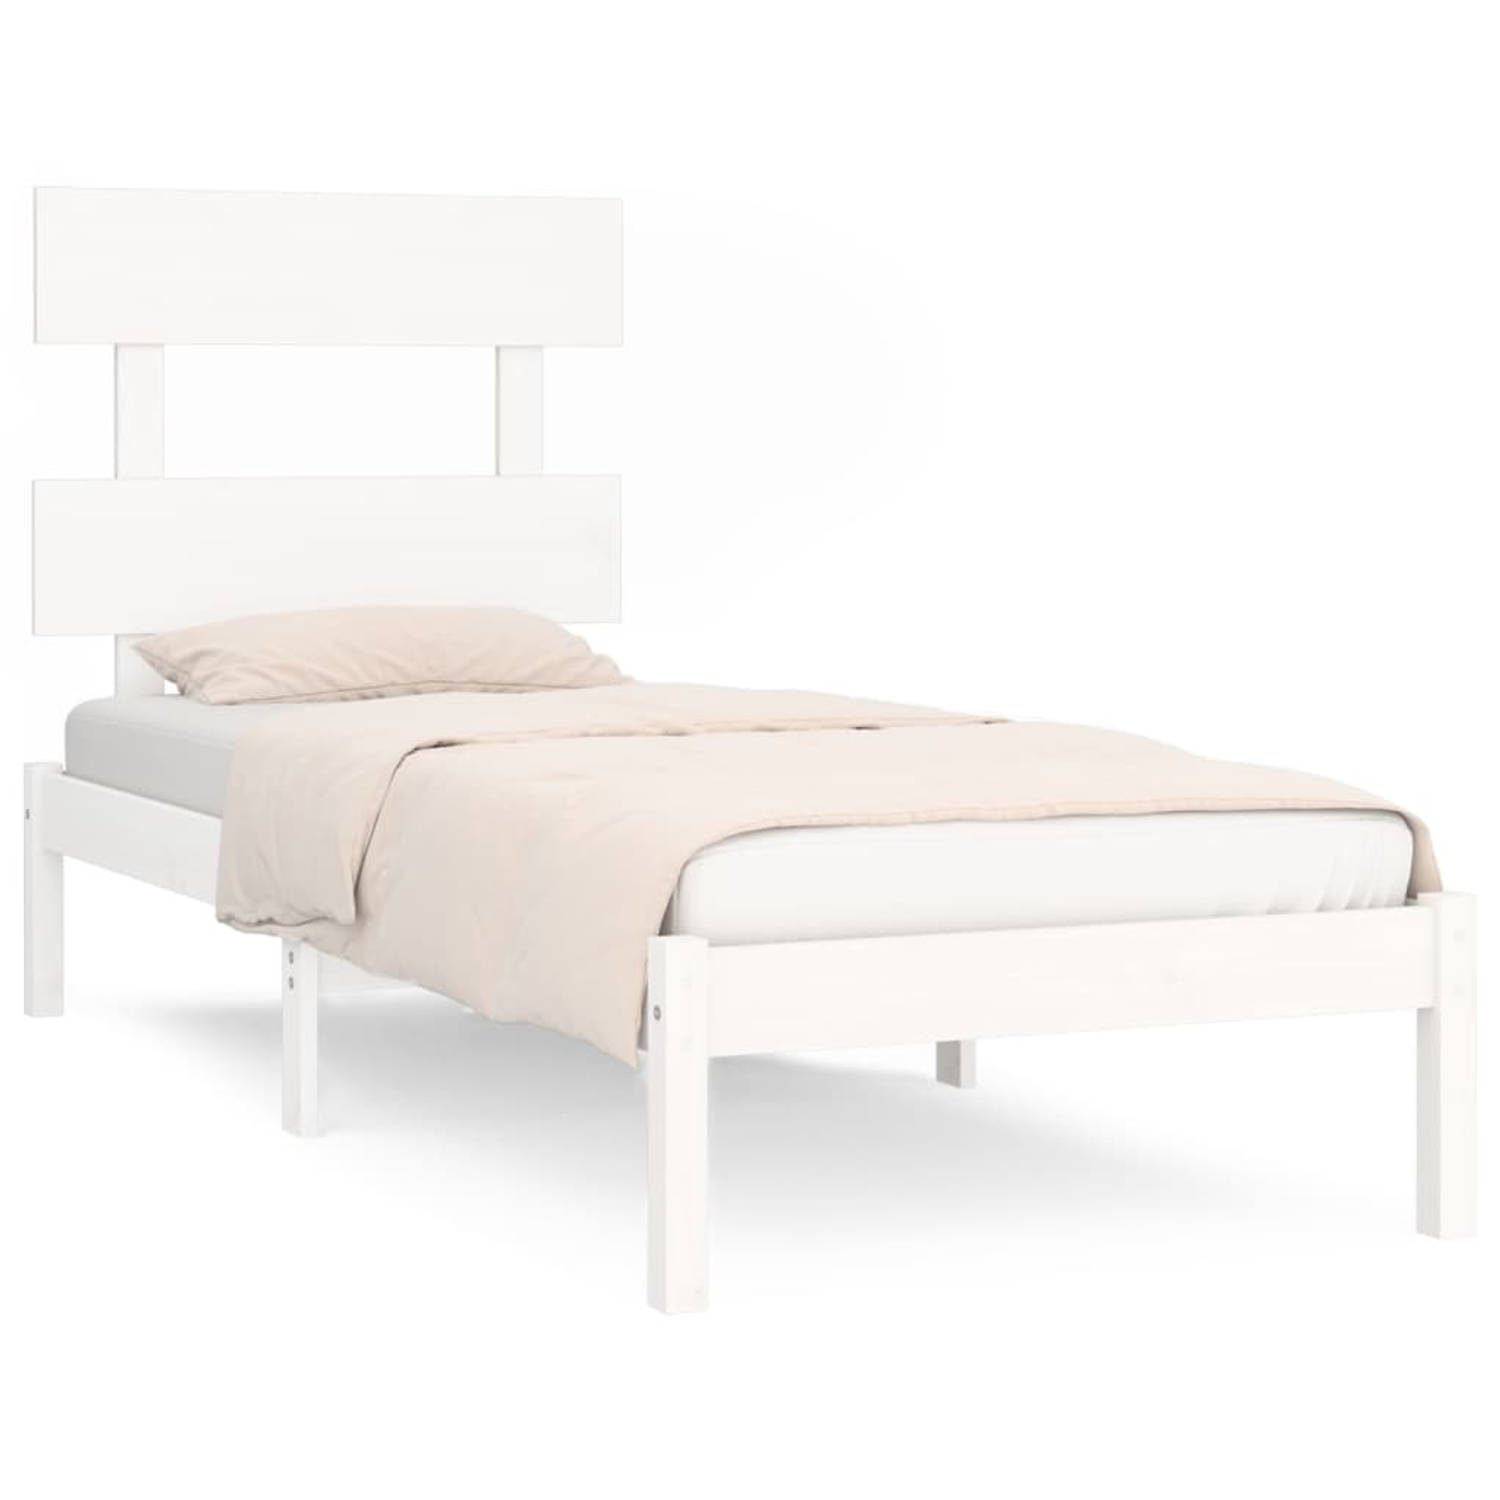 The Living Store Bedframe massief hout wit 100x200 cm - Bedframe - Bedframes - Eenpersoonsbed - Bed - Bedombouw - Frame - Bed Frame - Ledikant - Bedframe Met Hoofdeinde - Eenpersoo